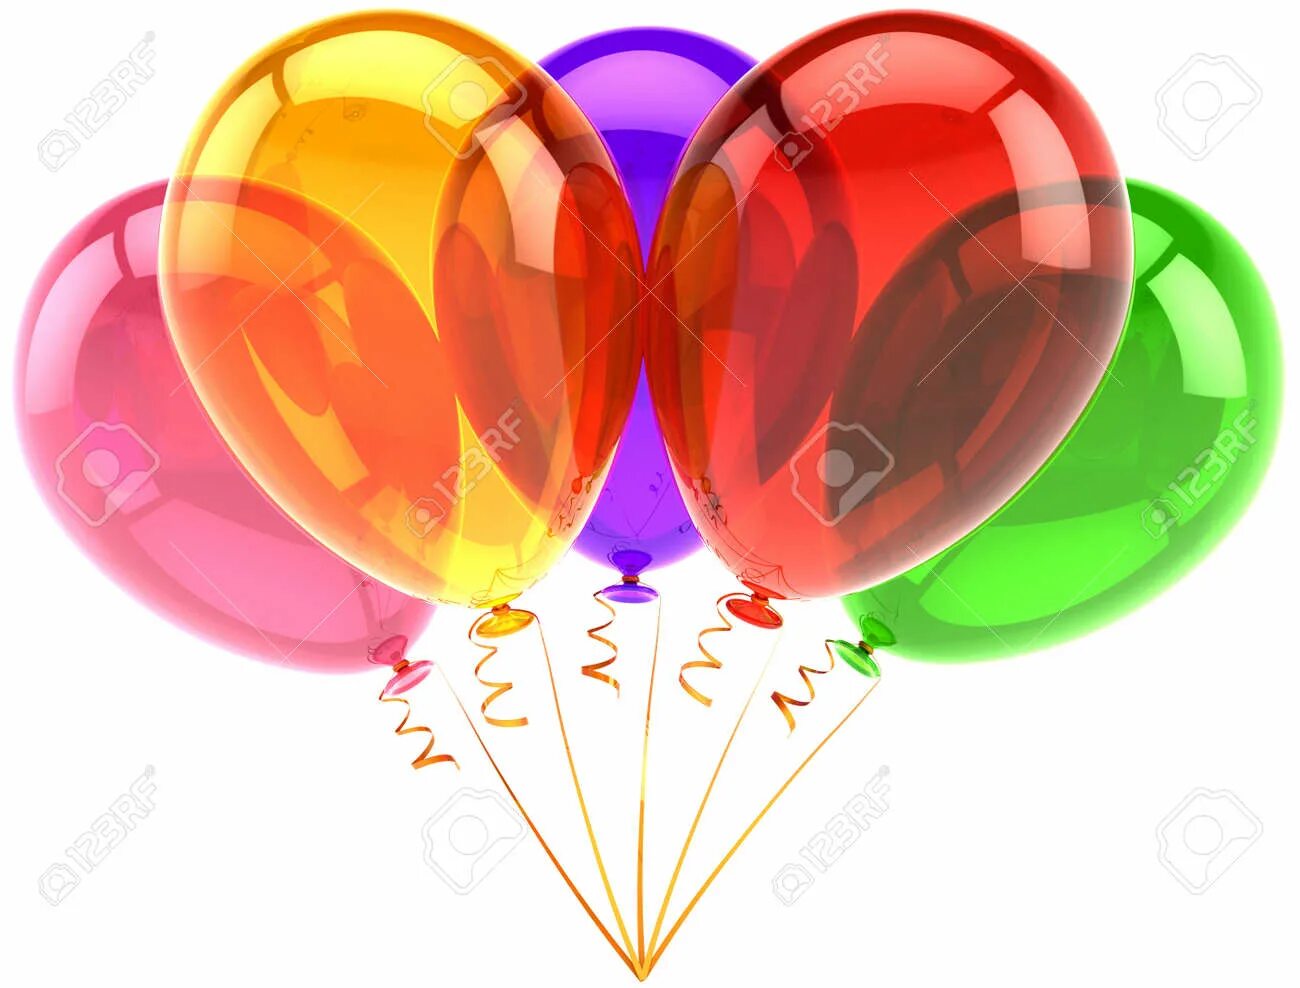 Три воздушных шарика. Воздушный шарик. Цветные шары. Праздничные разноцветные шары. Разноцветные шары на белом фоне.